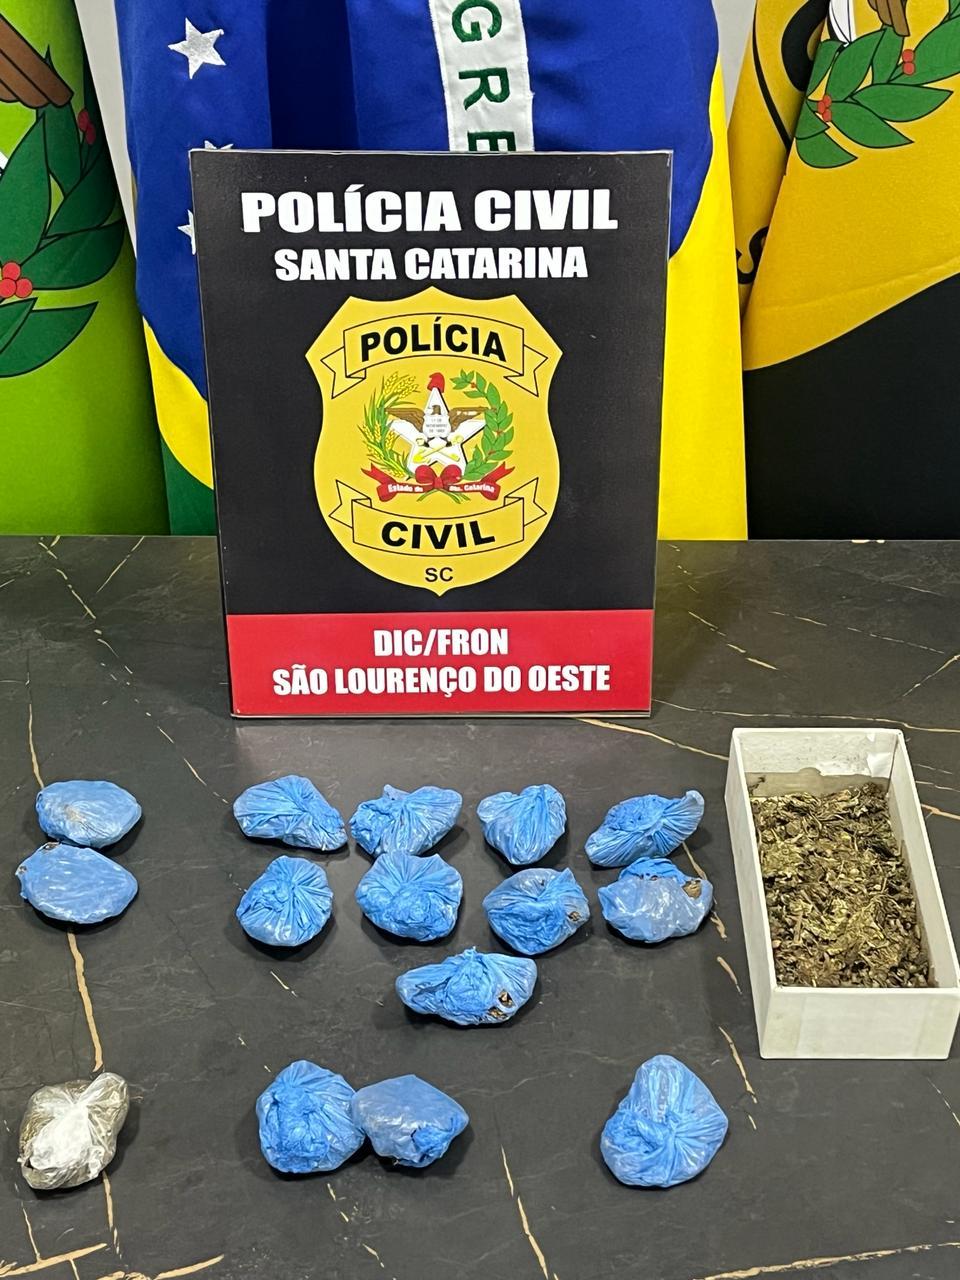 POLÍCIA CIVIL PRENDE HOMEM EM FLAGRANTE PELO CRIME DE TRÁFICO DE DROGAS EM SÃO LOURENÇO DO OESTE/SC